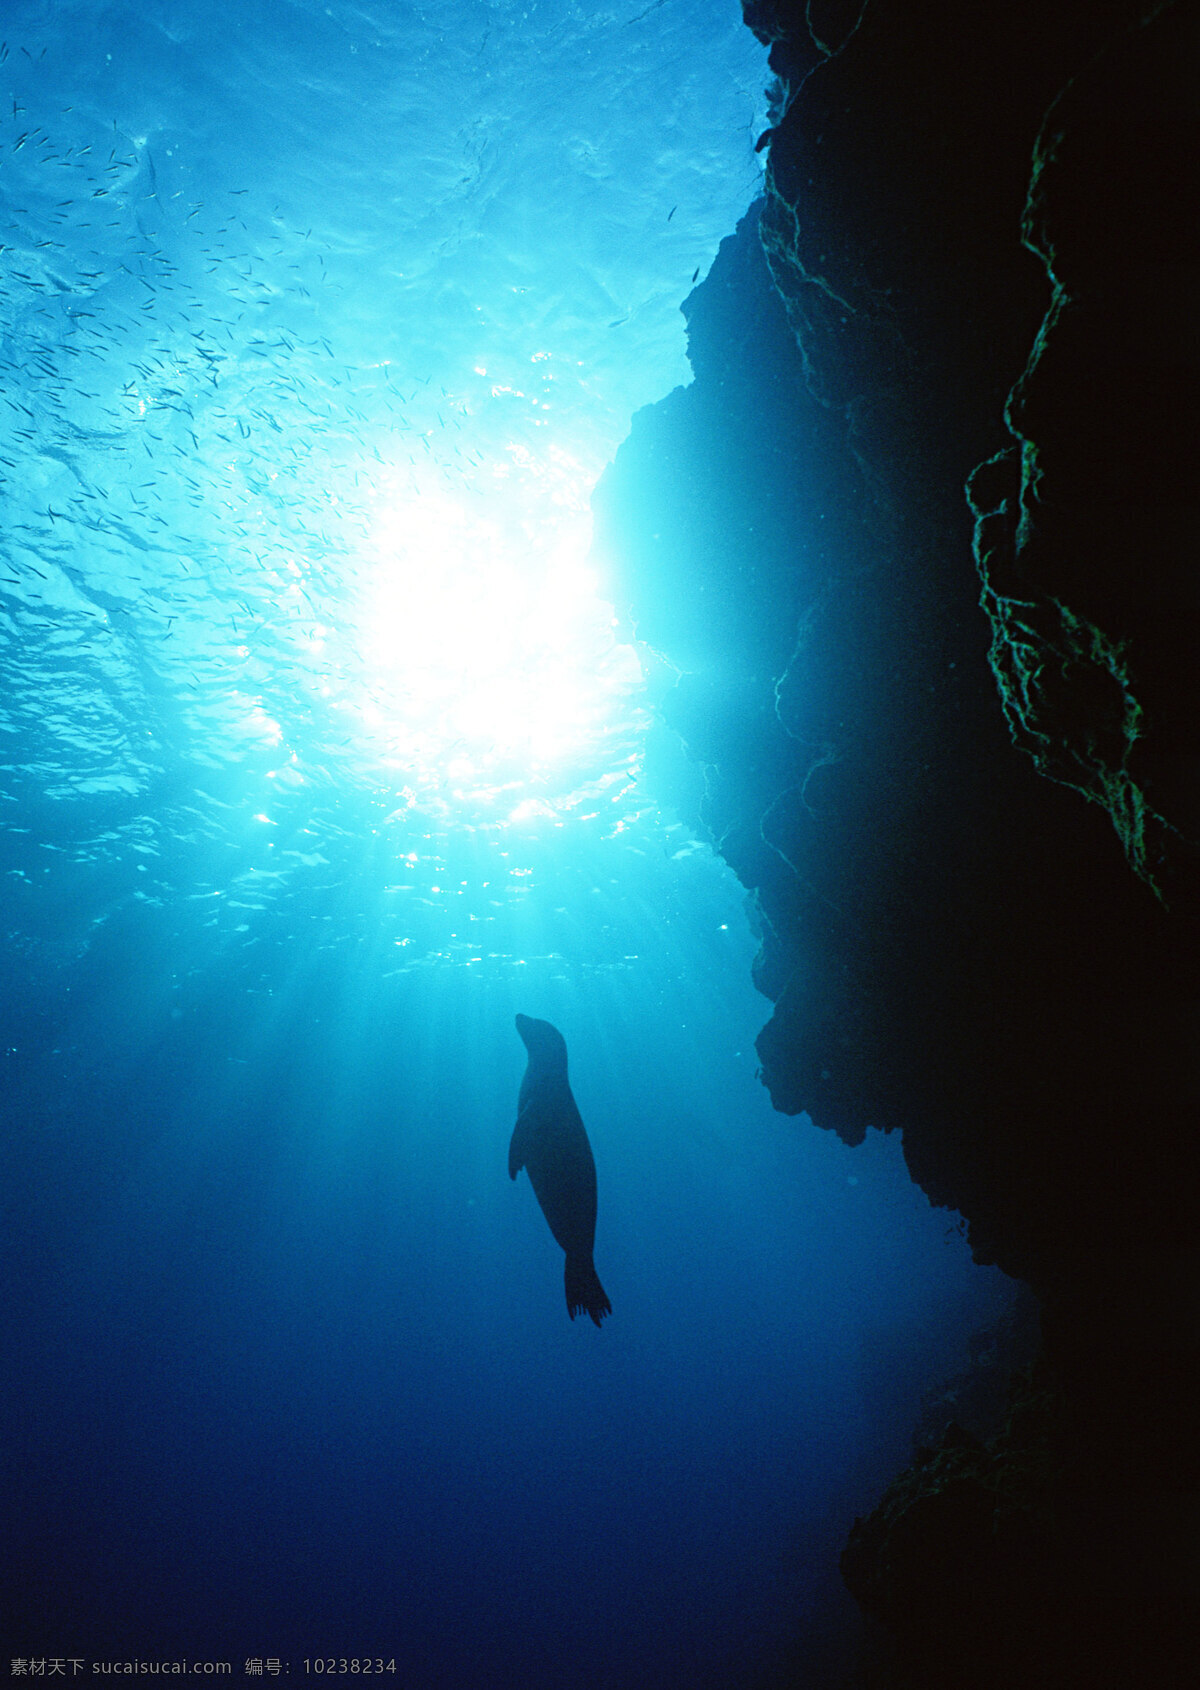 海底 海豹 动物世界 生物世界 海底生物 大海 海水 水中生物